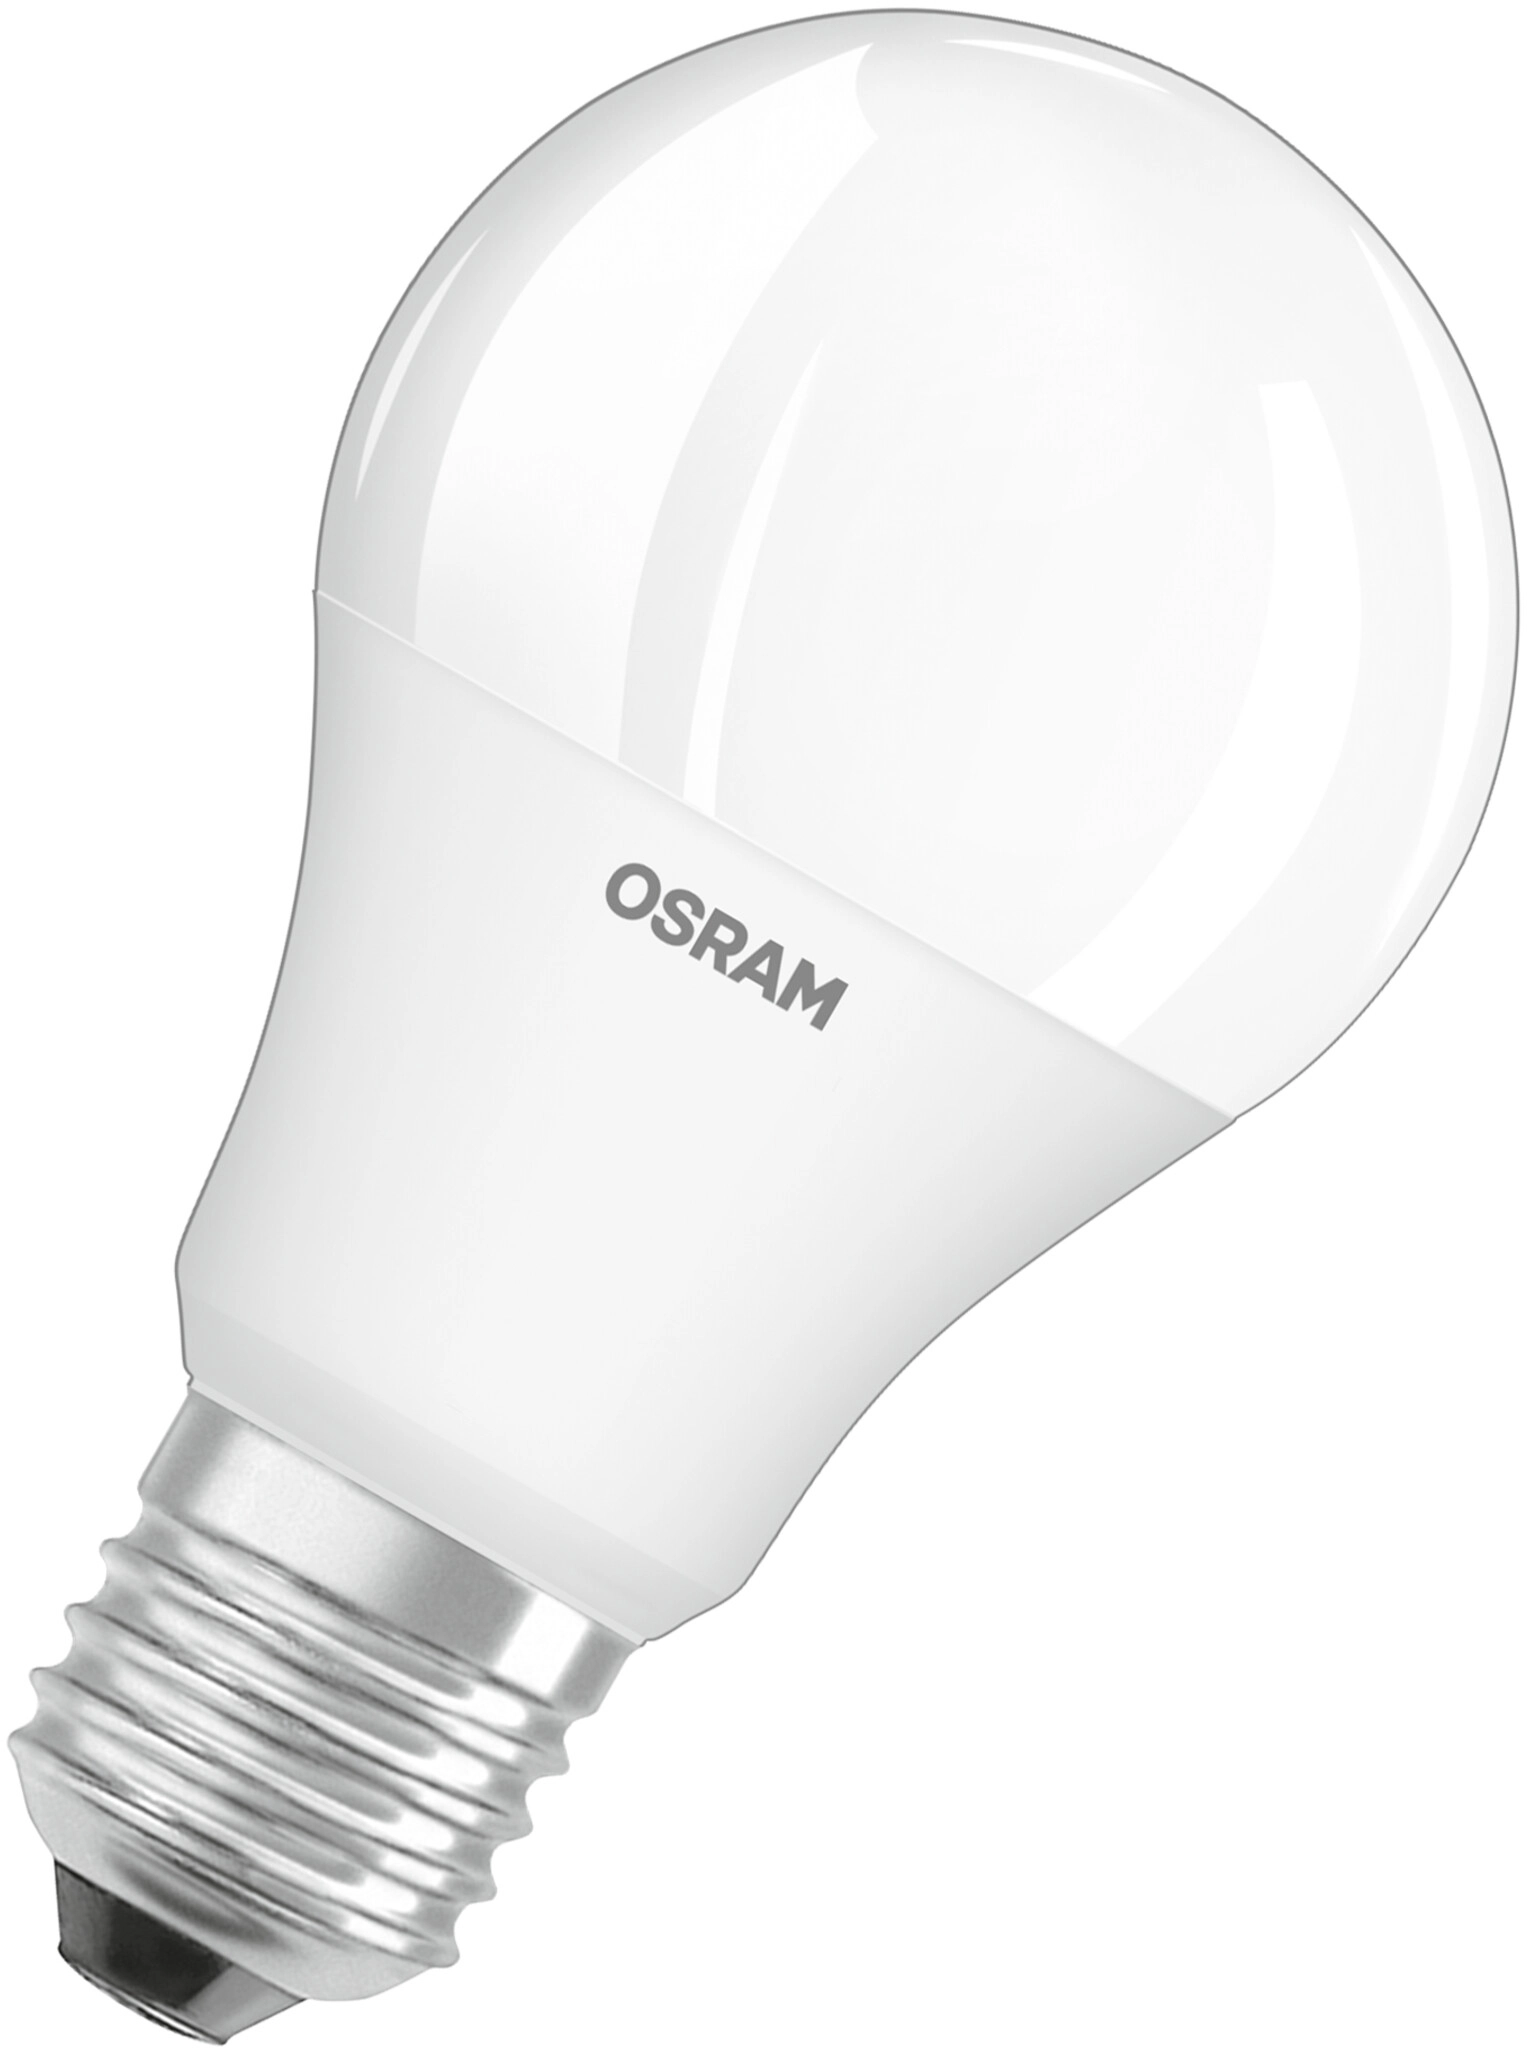 Osram Ampoule LED forme classique Remote E27 RVBB 60 W 806 lm télécommande